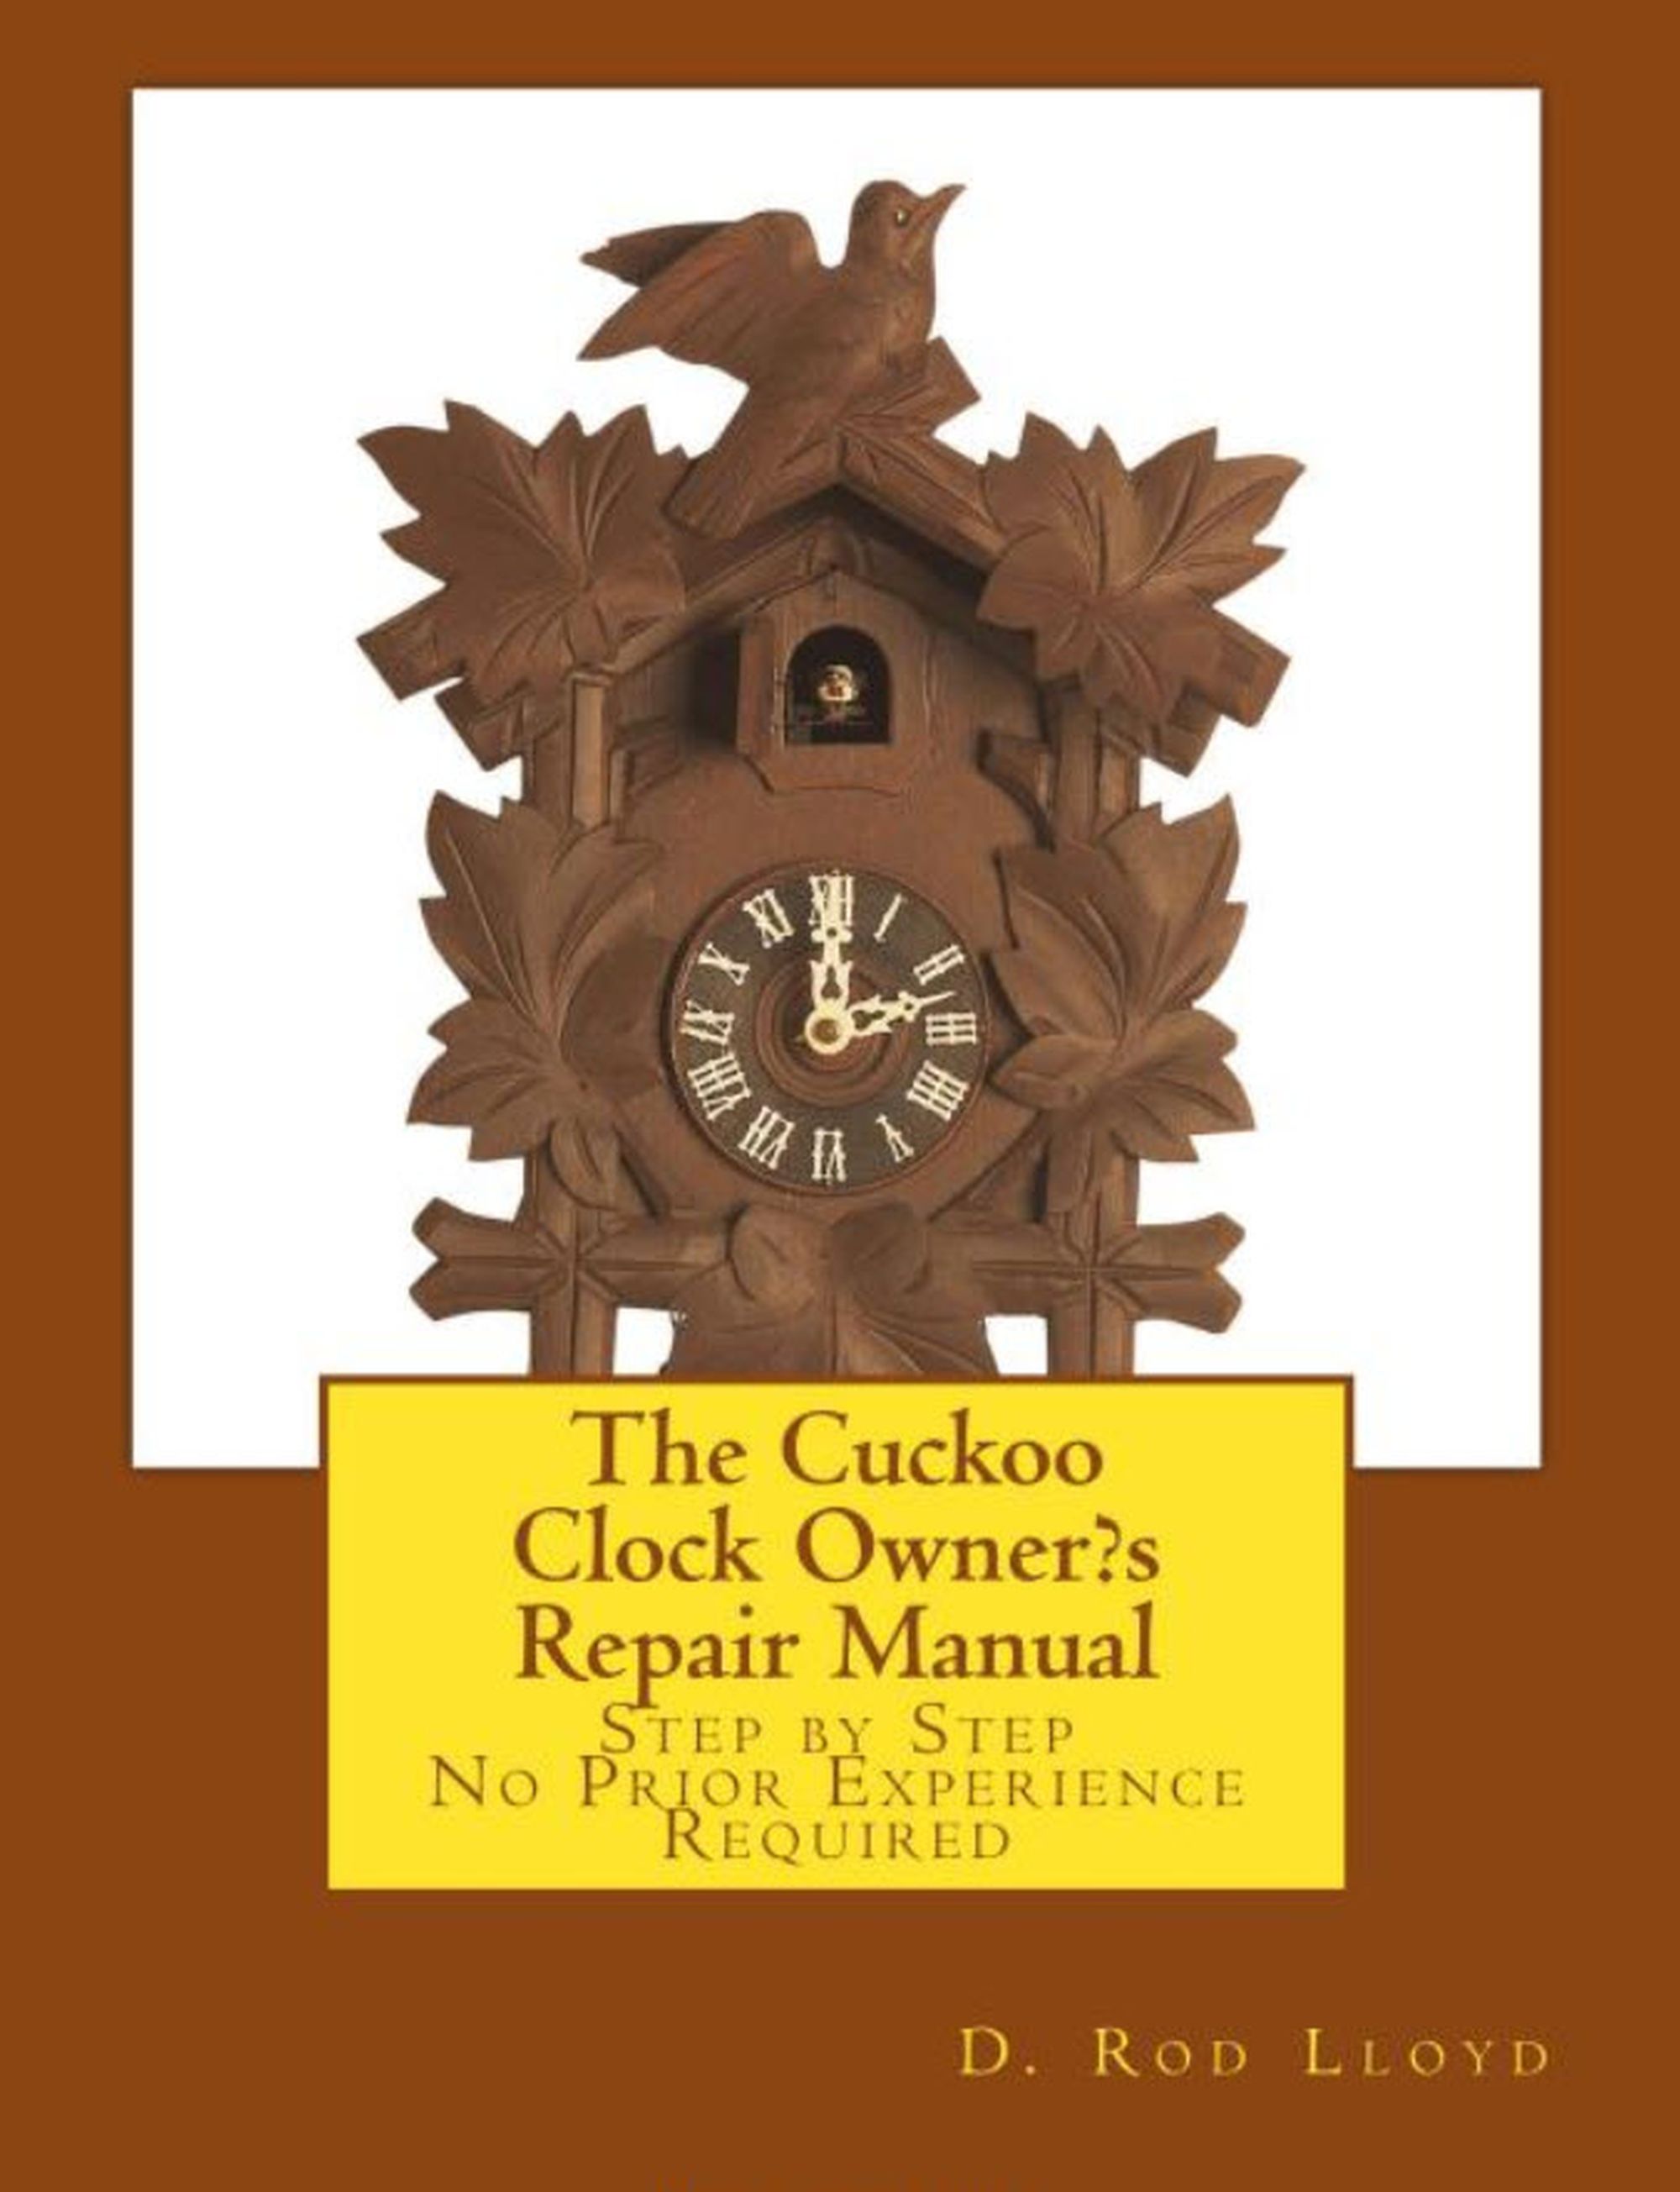 Cuckoo Clock Repair